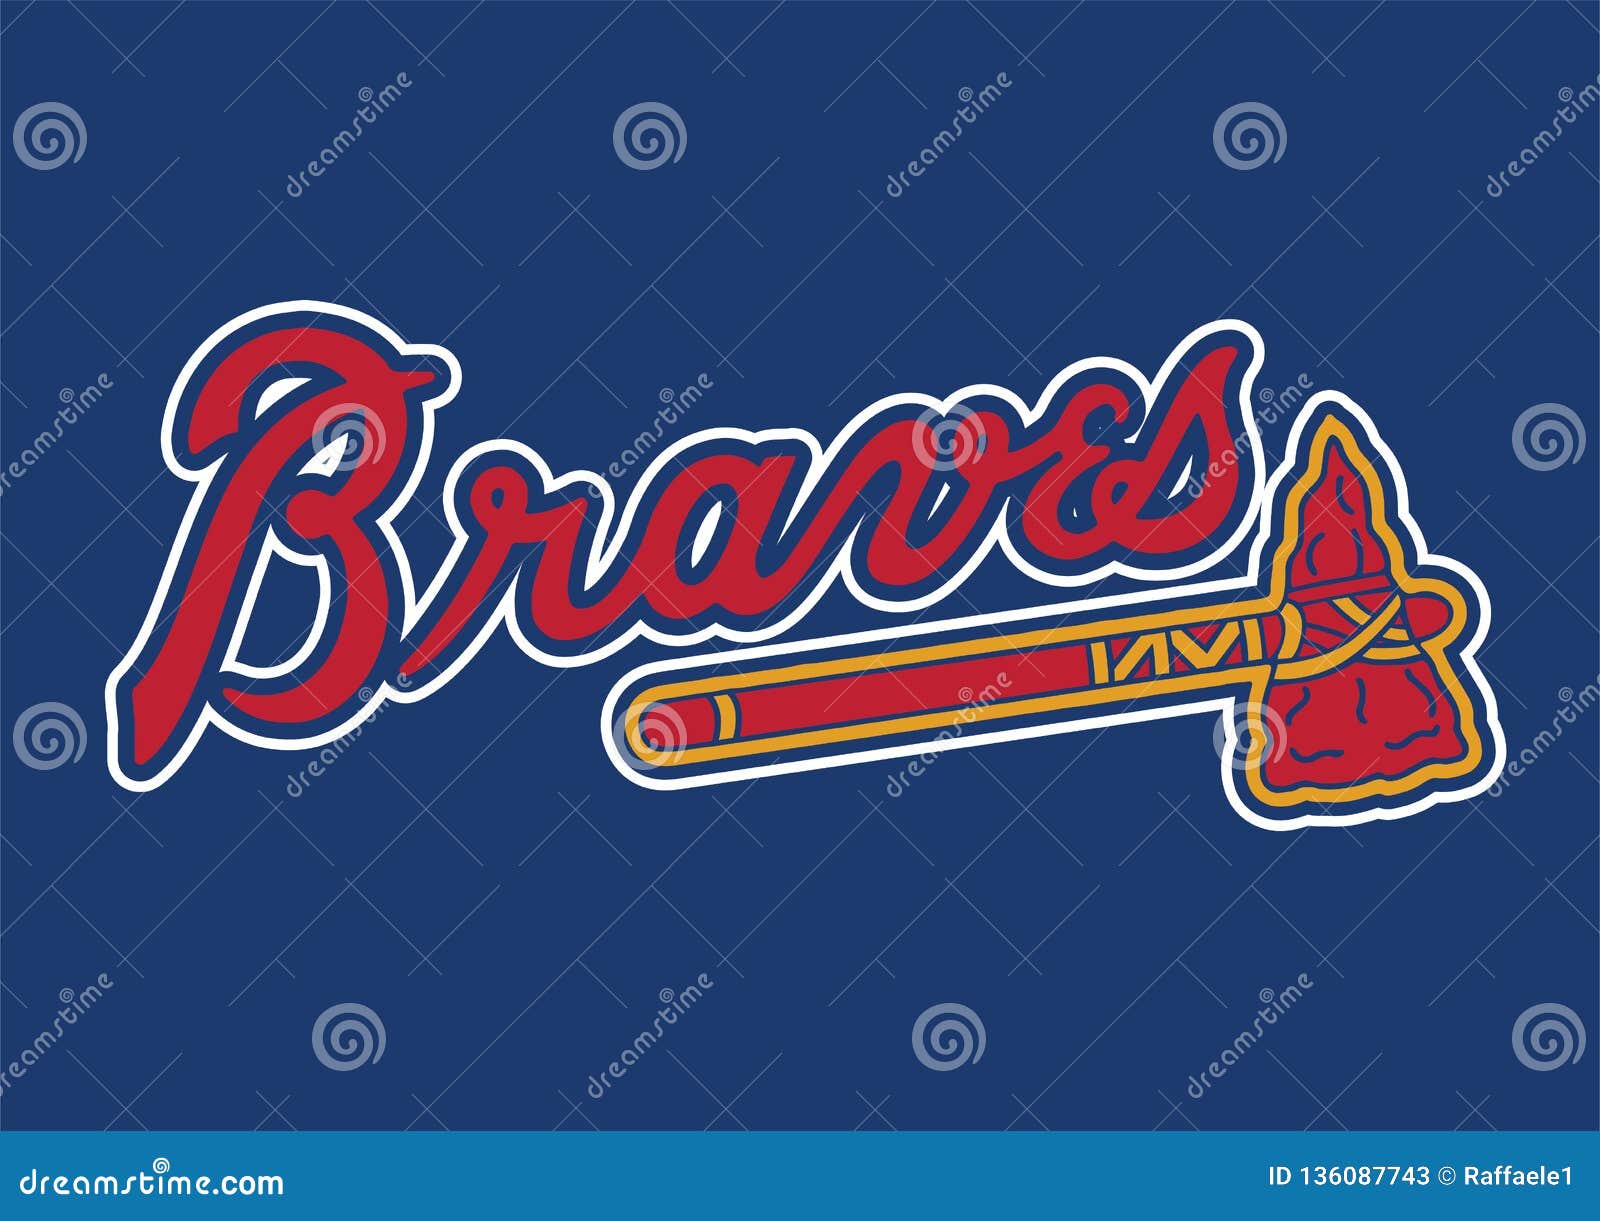 Braves Logo Stock Illustrations – 46 Braves Logo Stock